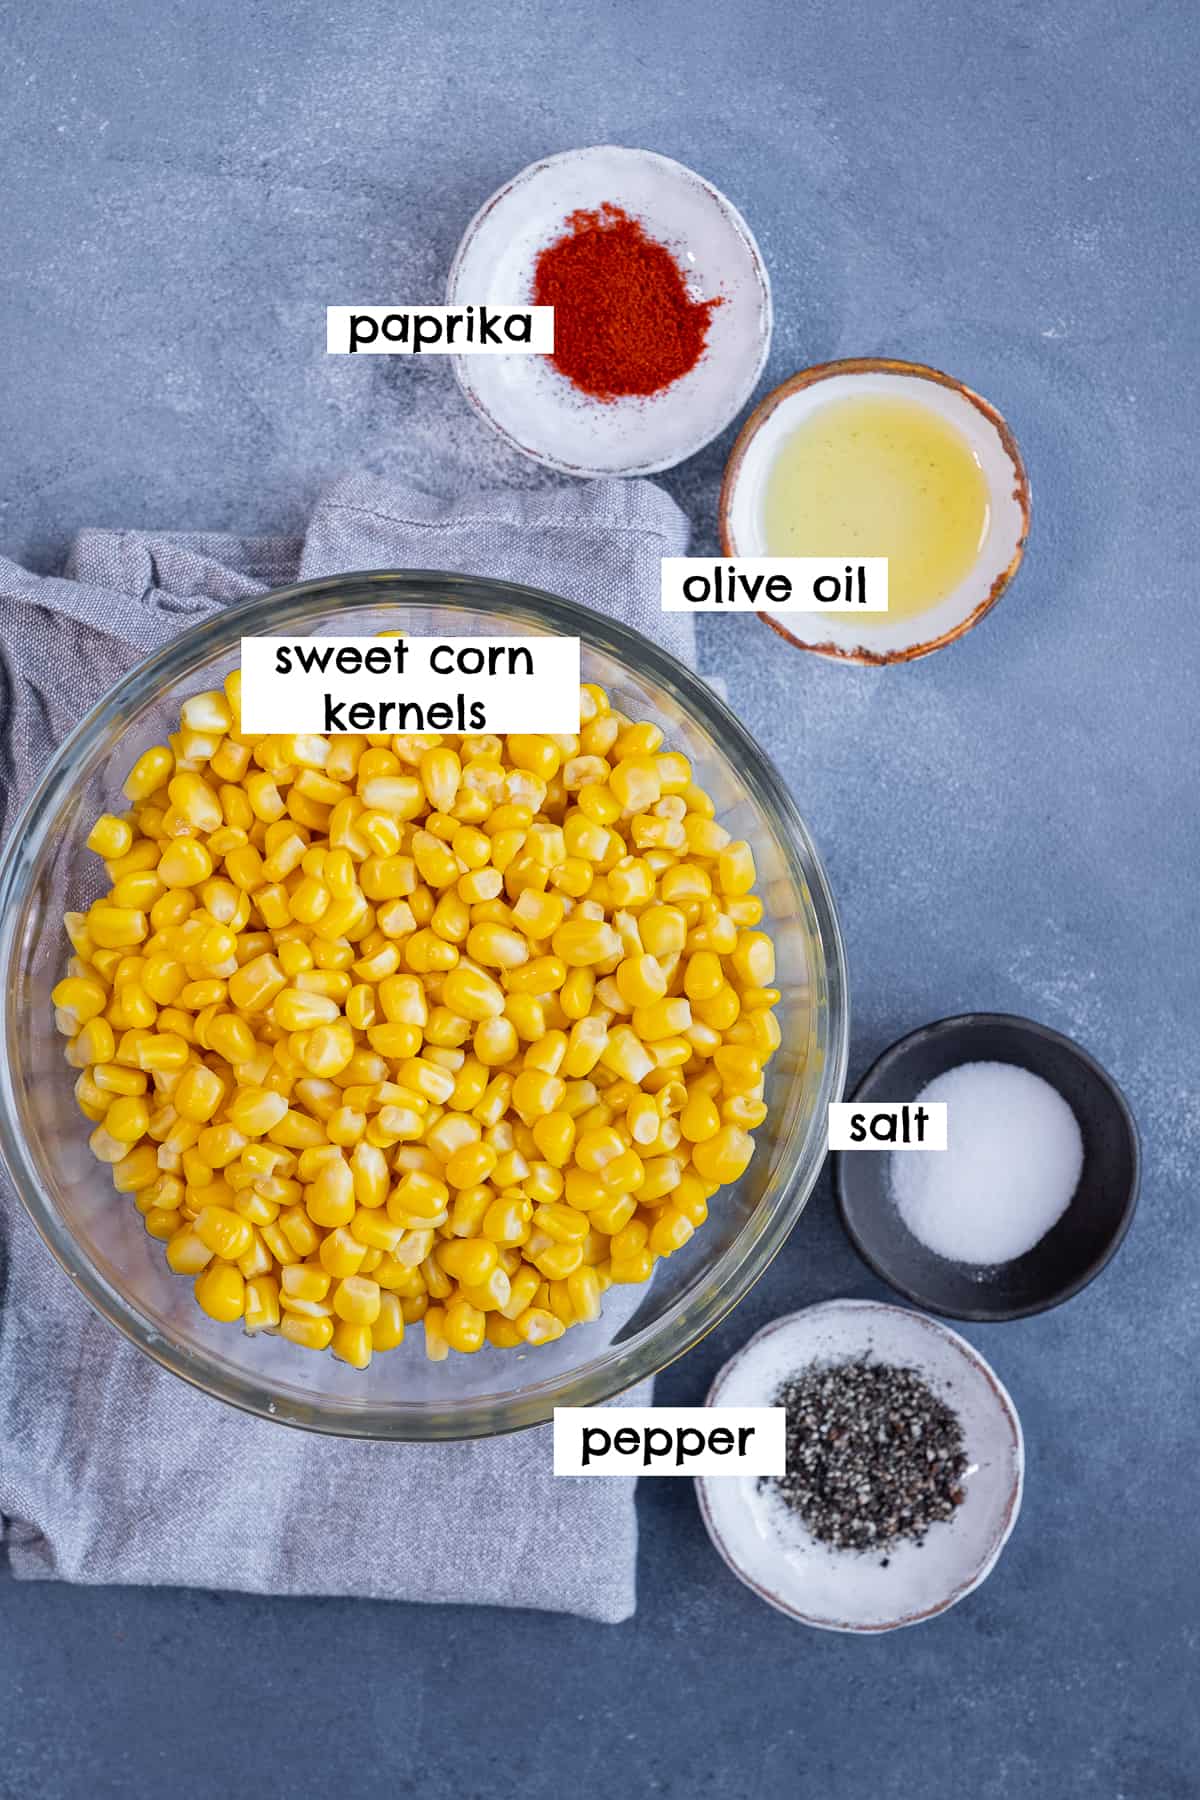 Sweet corn kernels, paprika, oil, salt and pepper on a grey background.